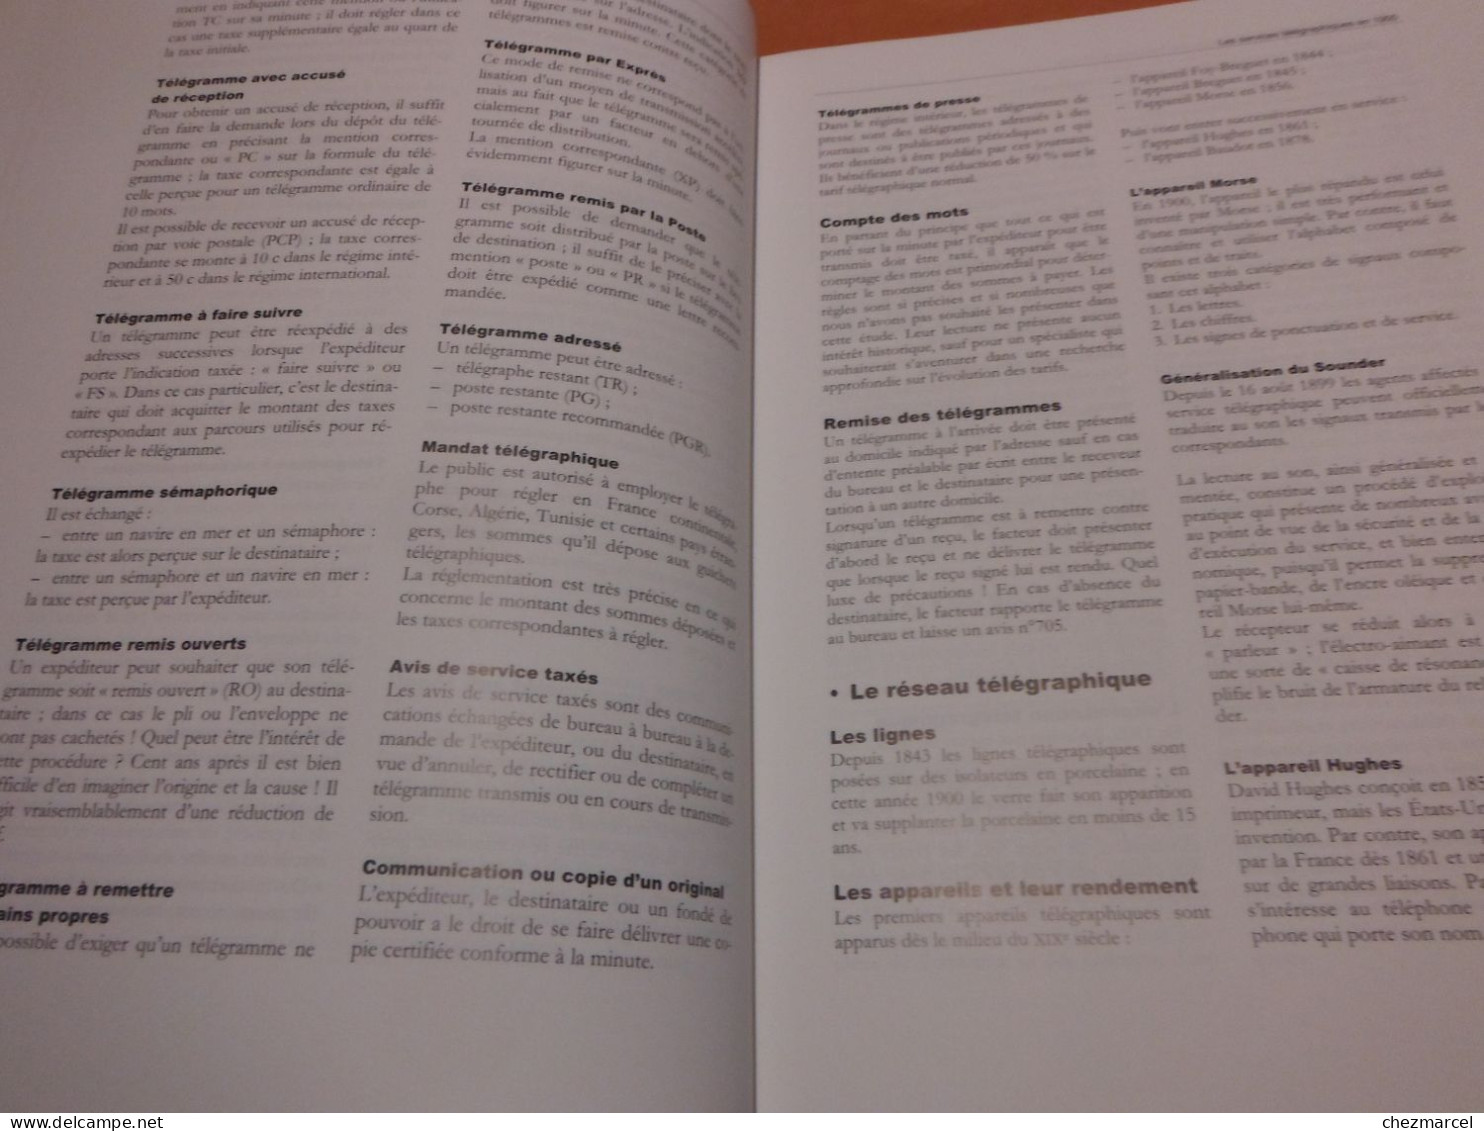 Postes Et Telecommunications Francaises"une Chronologie Du 20e Siecle Edition Fnarh - Postal Administrations